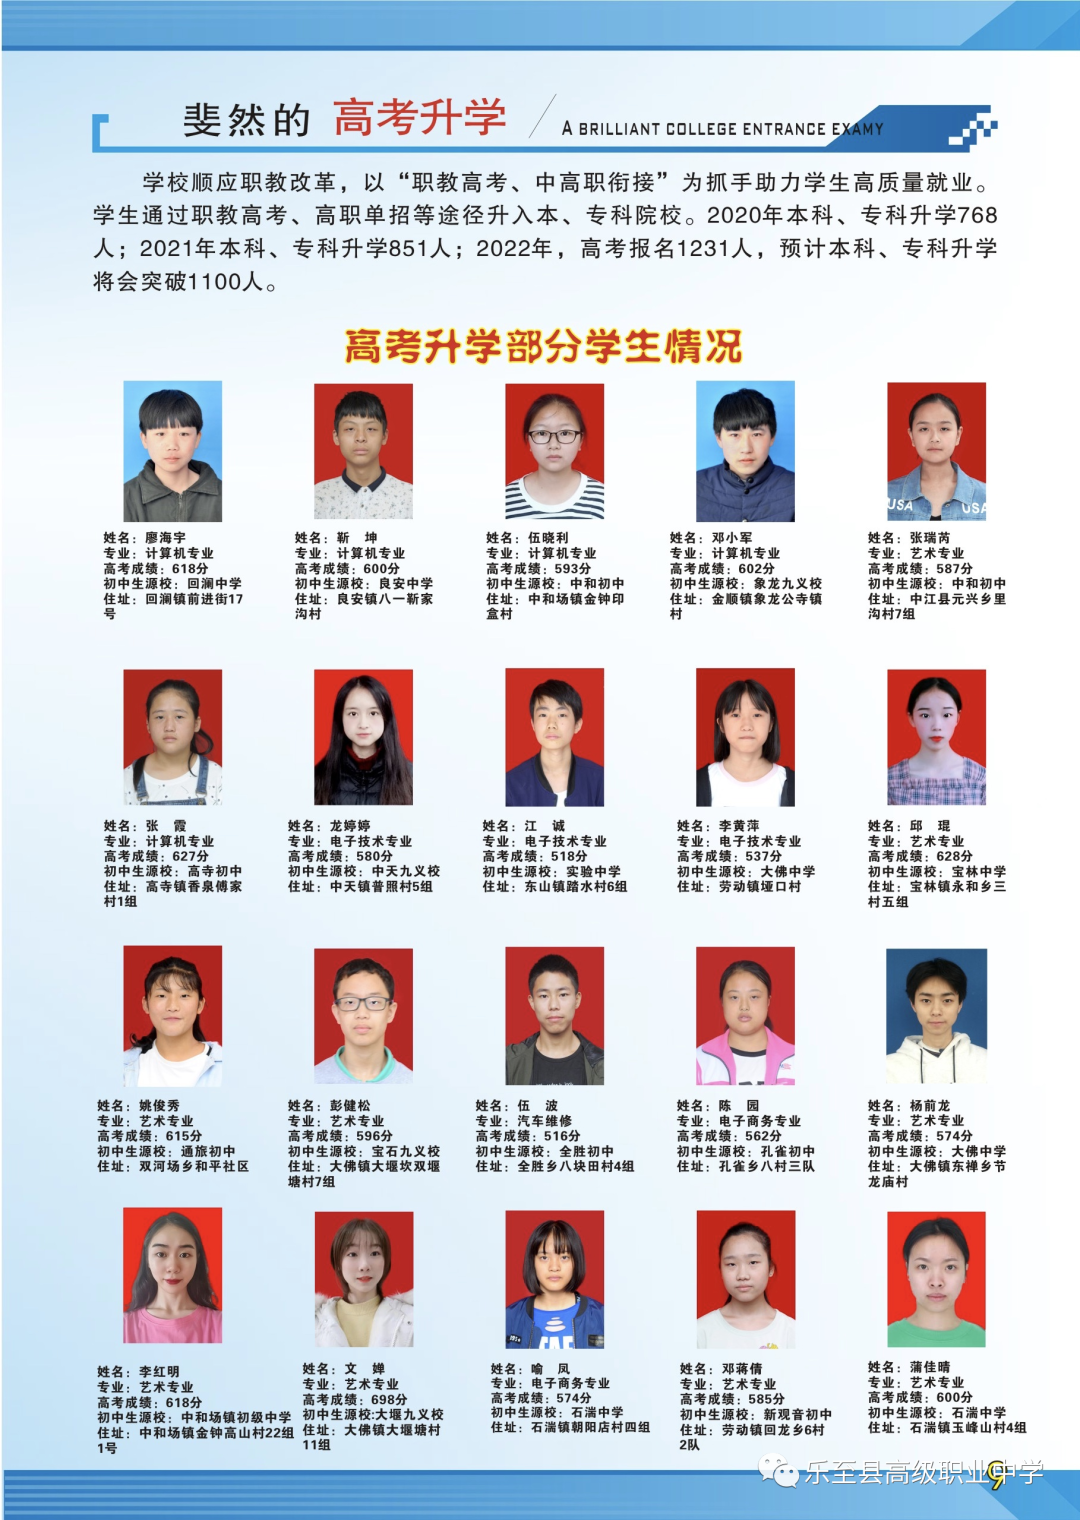 四川省乐至县高级职业中学2022年招生简章